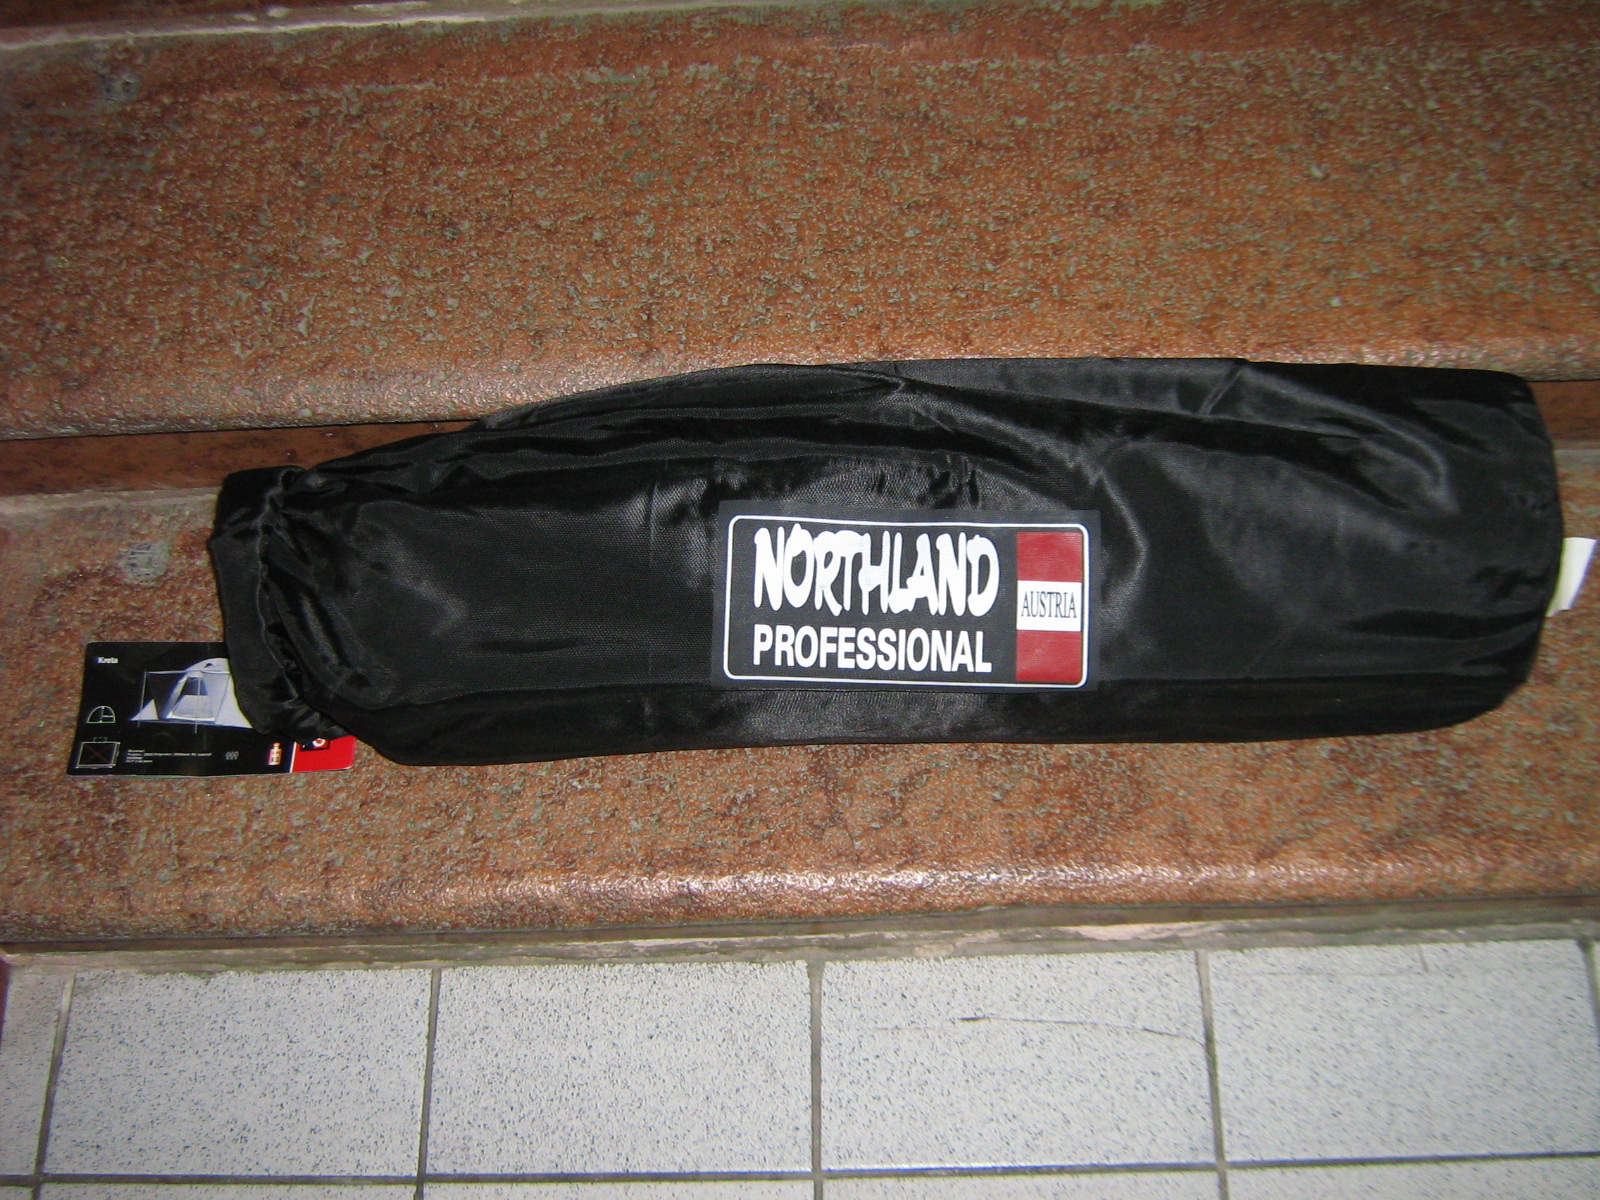 Northland 3-4 személyes új, de csomagolás sérült sátrak